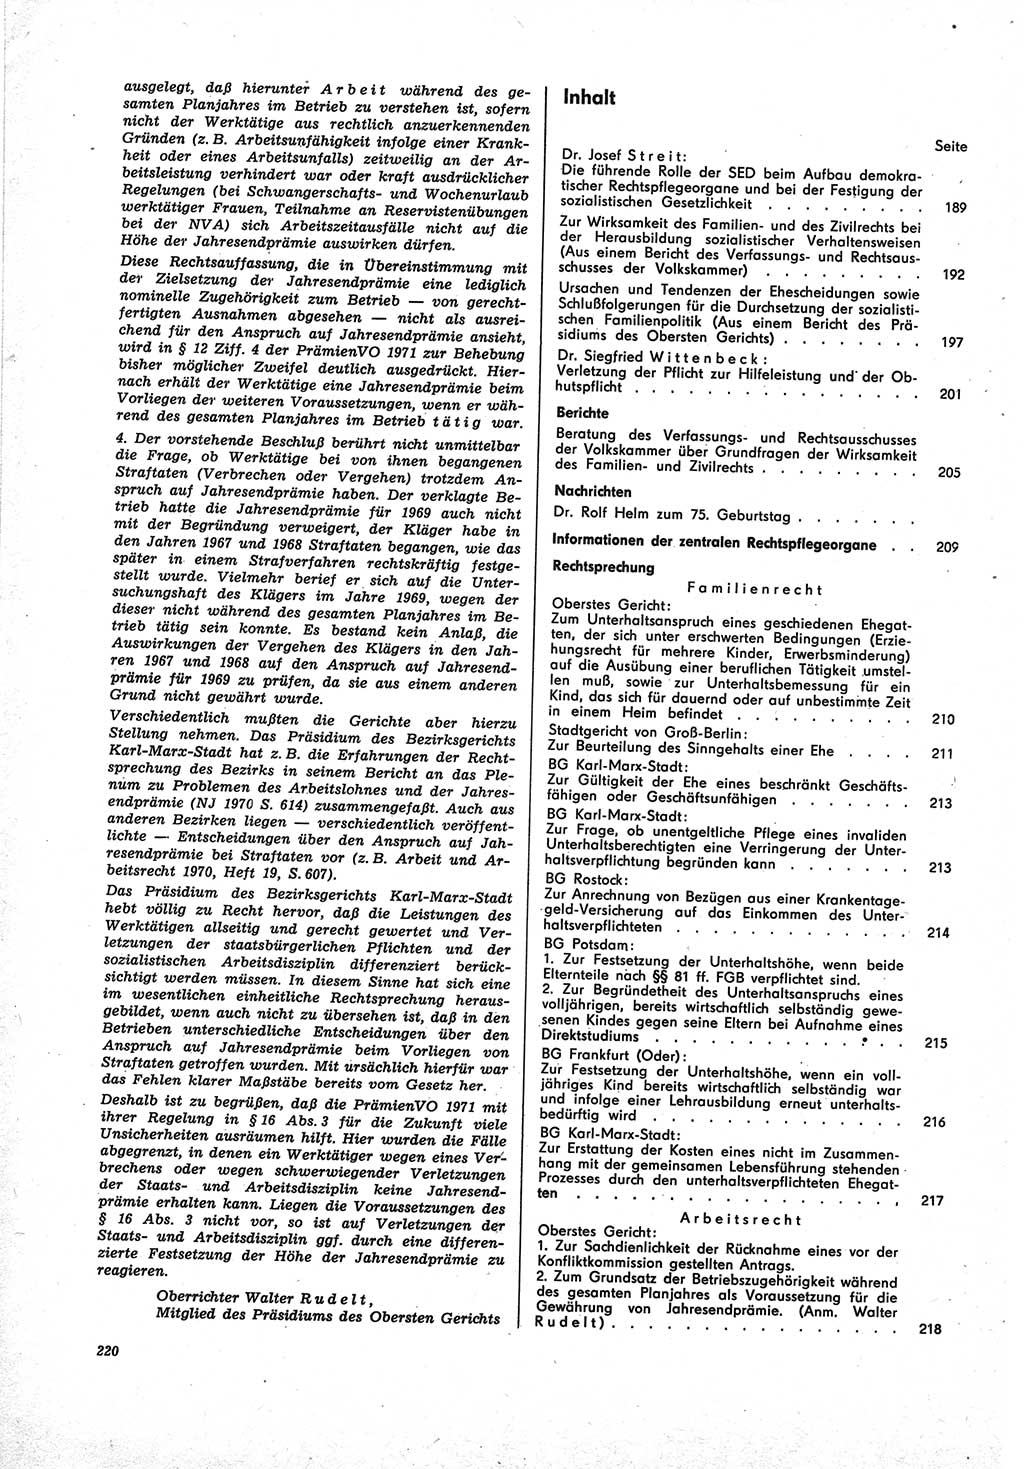 Neue Justiz (NJ), Zeitschrift für Recht und Rechtswissenschaft [Deutsche Demokratische Republik (DDR)], 25. Jahrgang 1971, Seite 220 (NJ DDR 1971, S. 220)